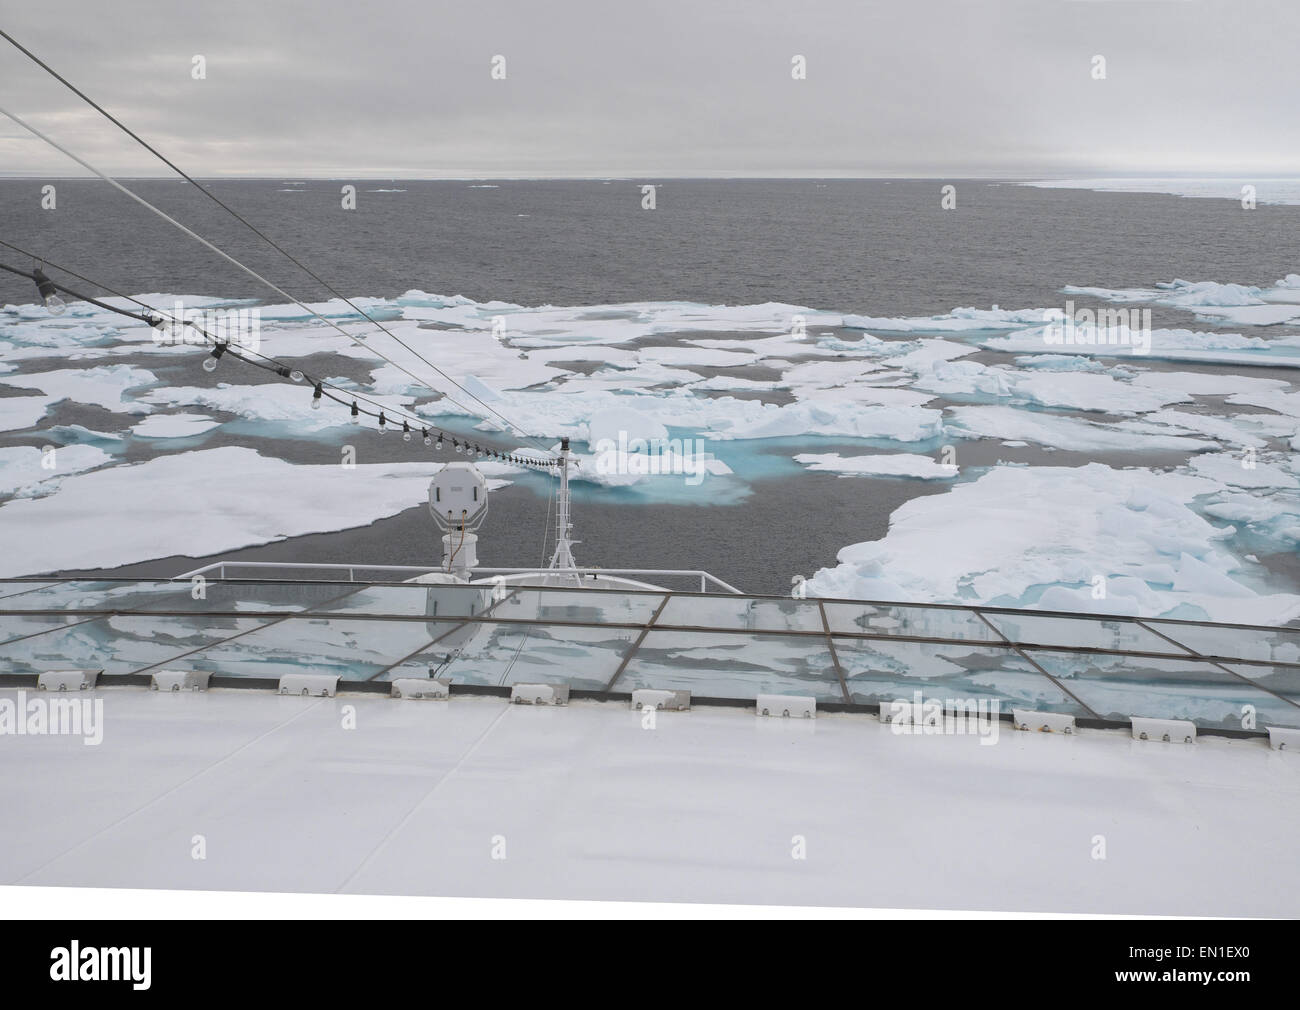 Le bord de l'inlandsis polaire du nord arctique vu de bateau de croisière mv fram, août 2014, l'océan Arctique au nord de Spitzberg, Svalbard Banque D'Images